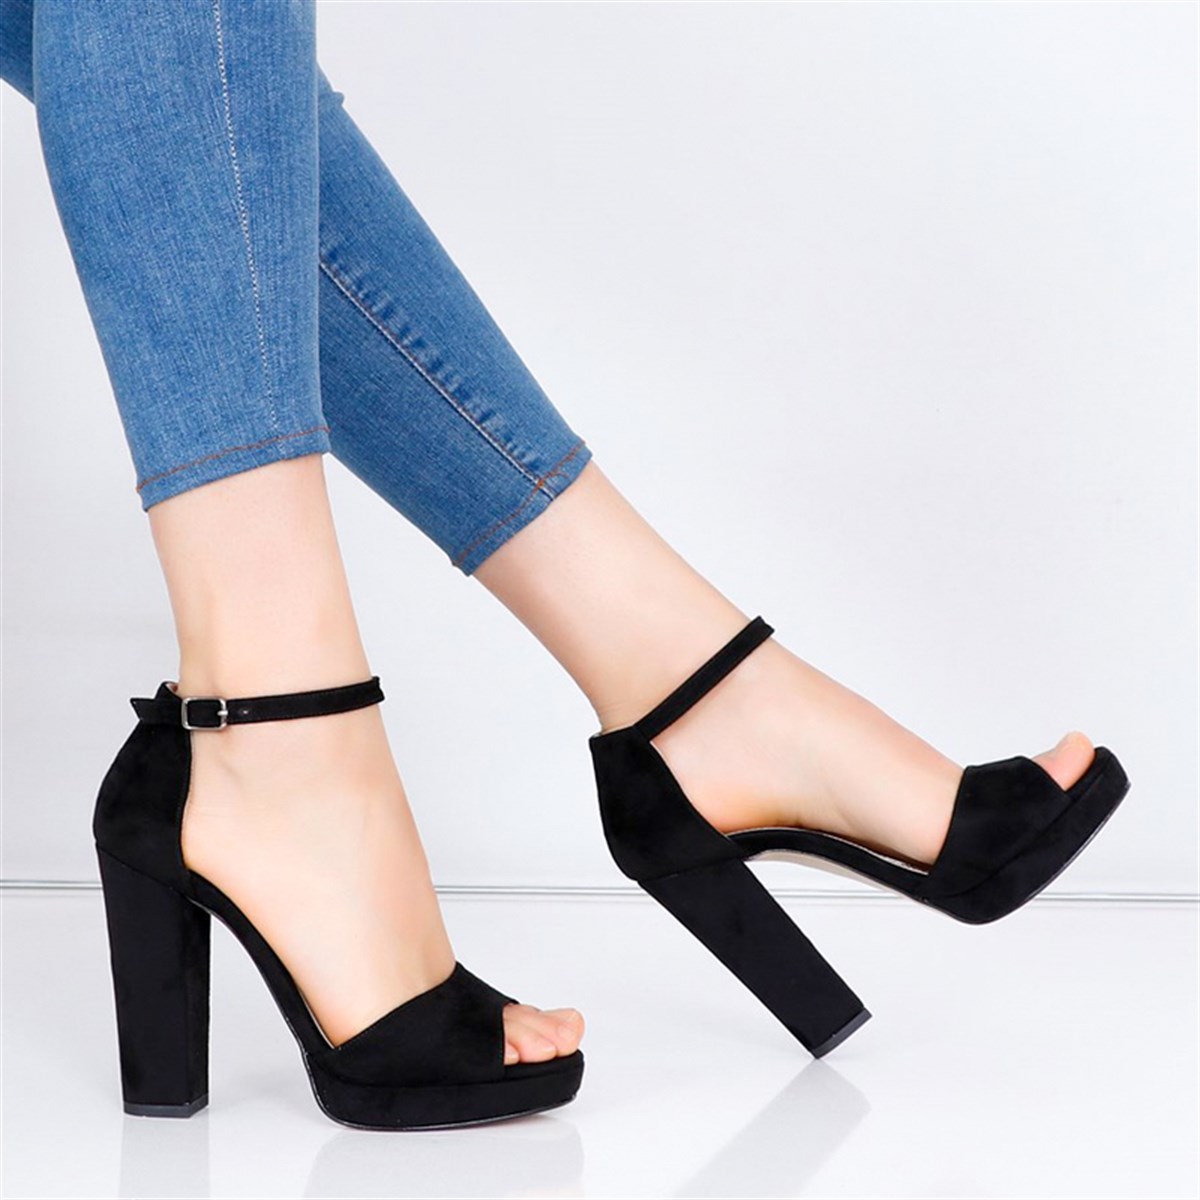 Siyah süet Kalın Topuklu Bayan Ayakkabı 015Y Fiyatı ve Modelleri